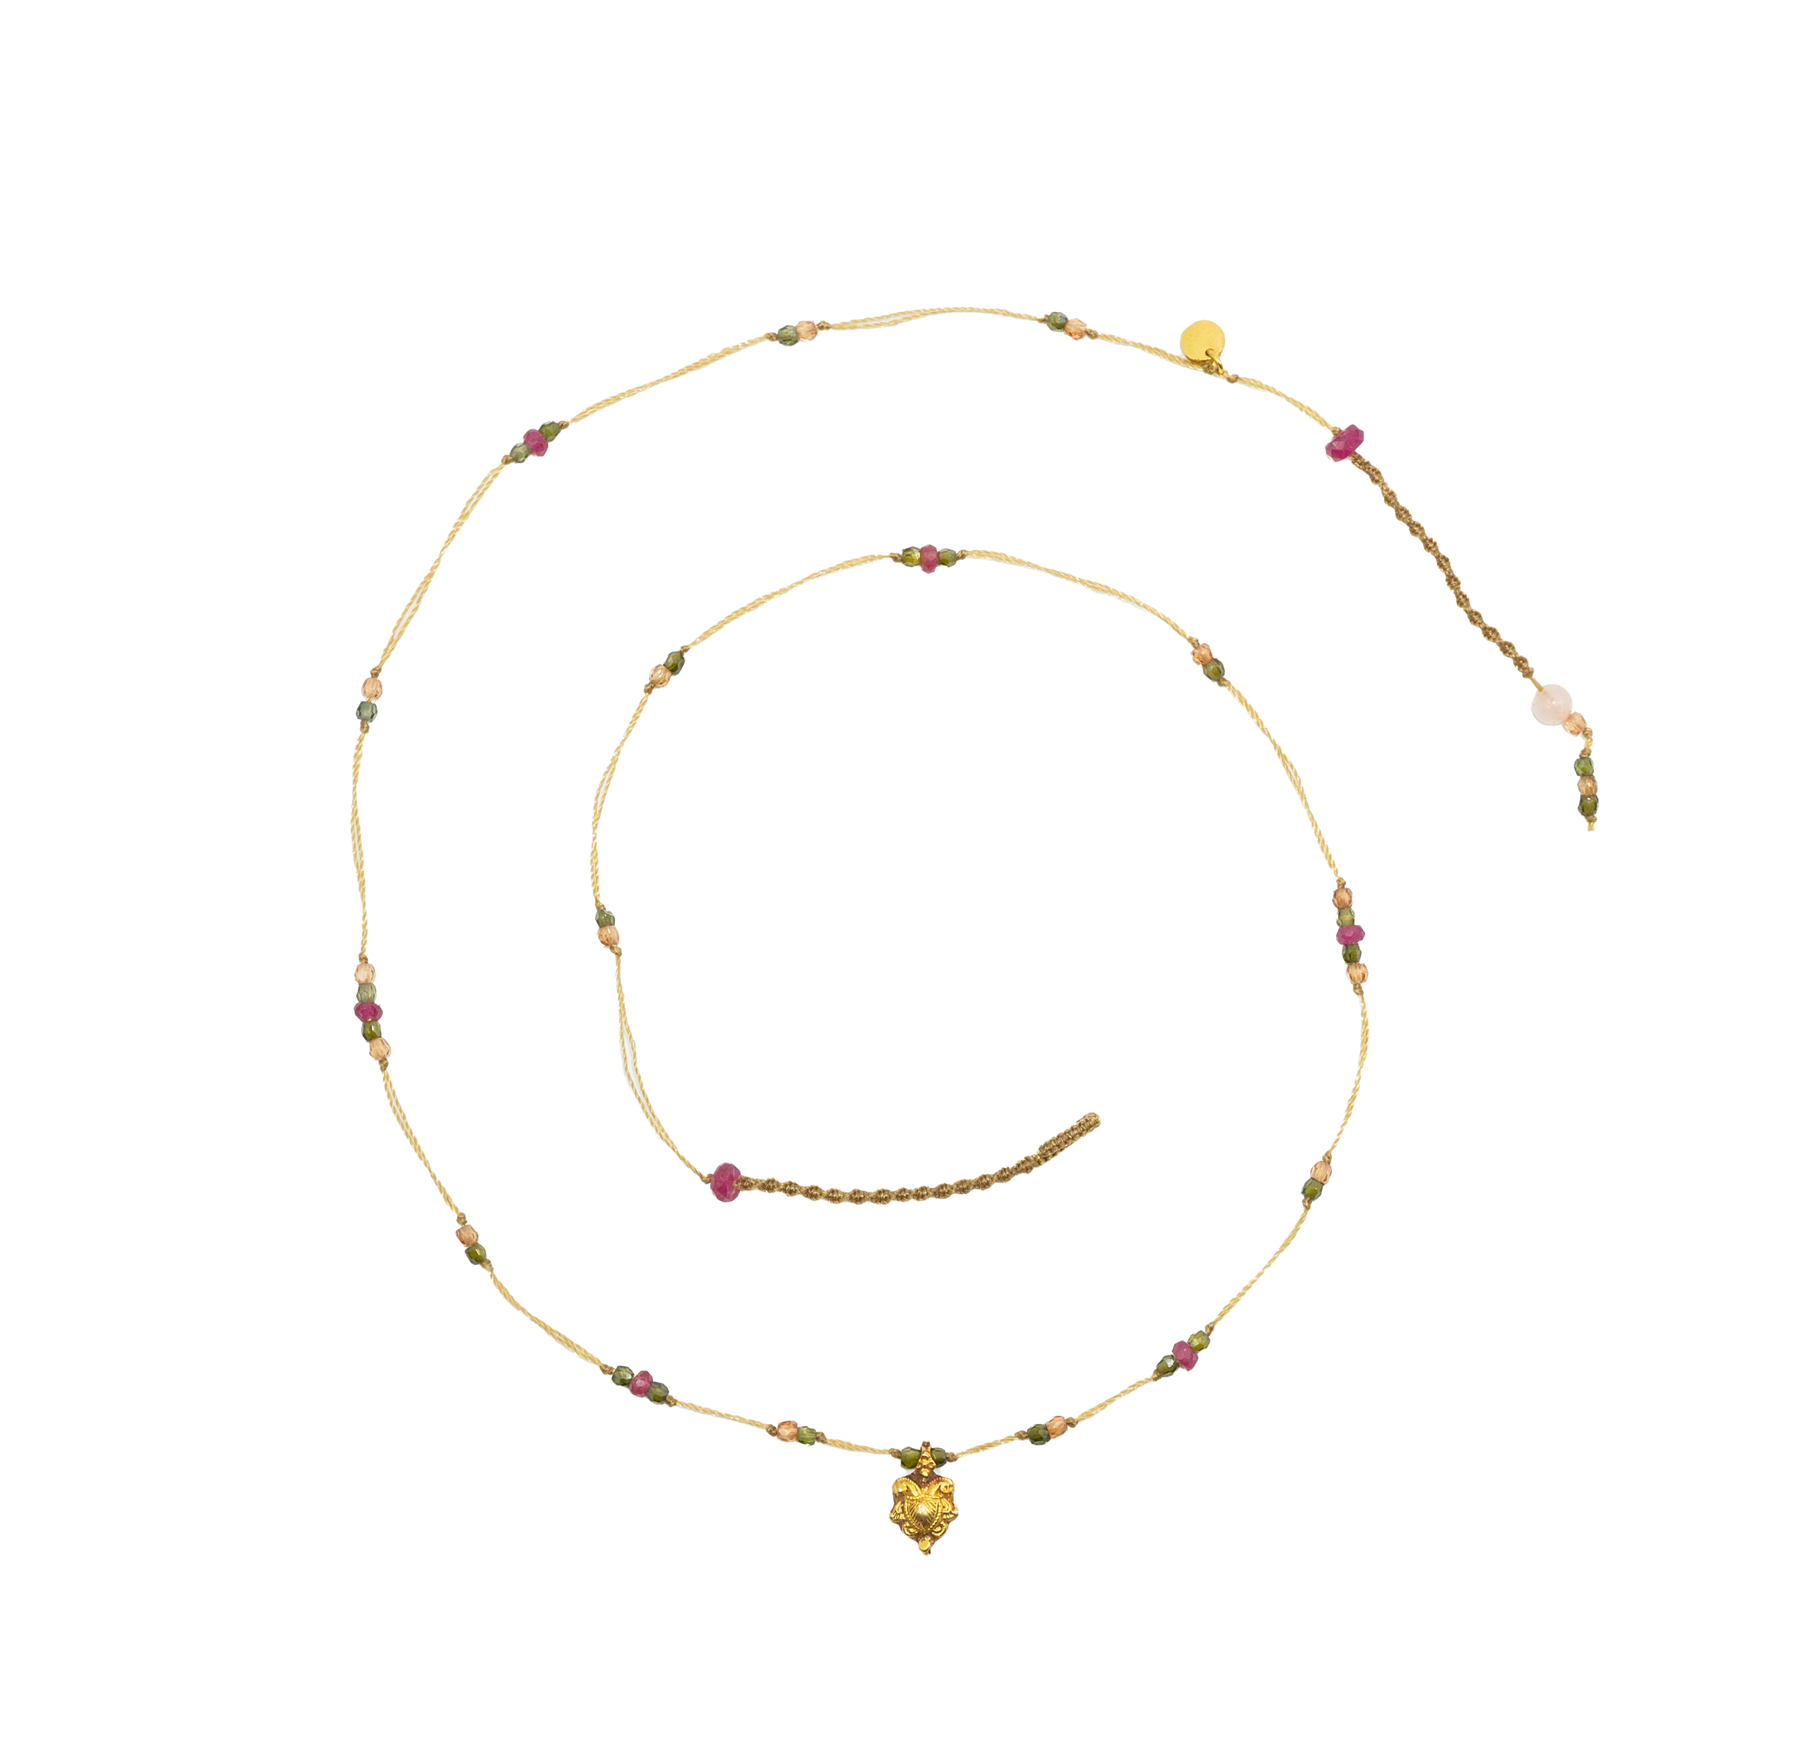 Goldie Necklace - Mix Pink Tourmaline - Beige Thread